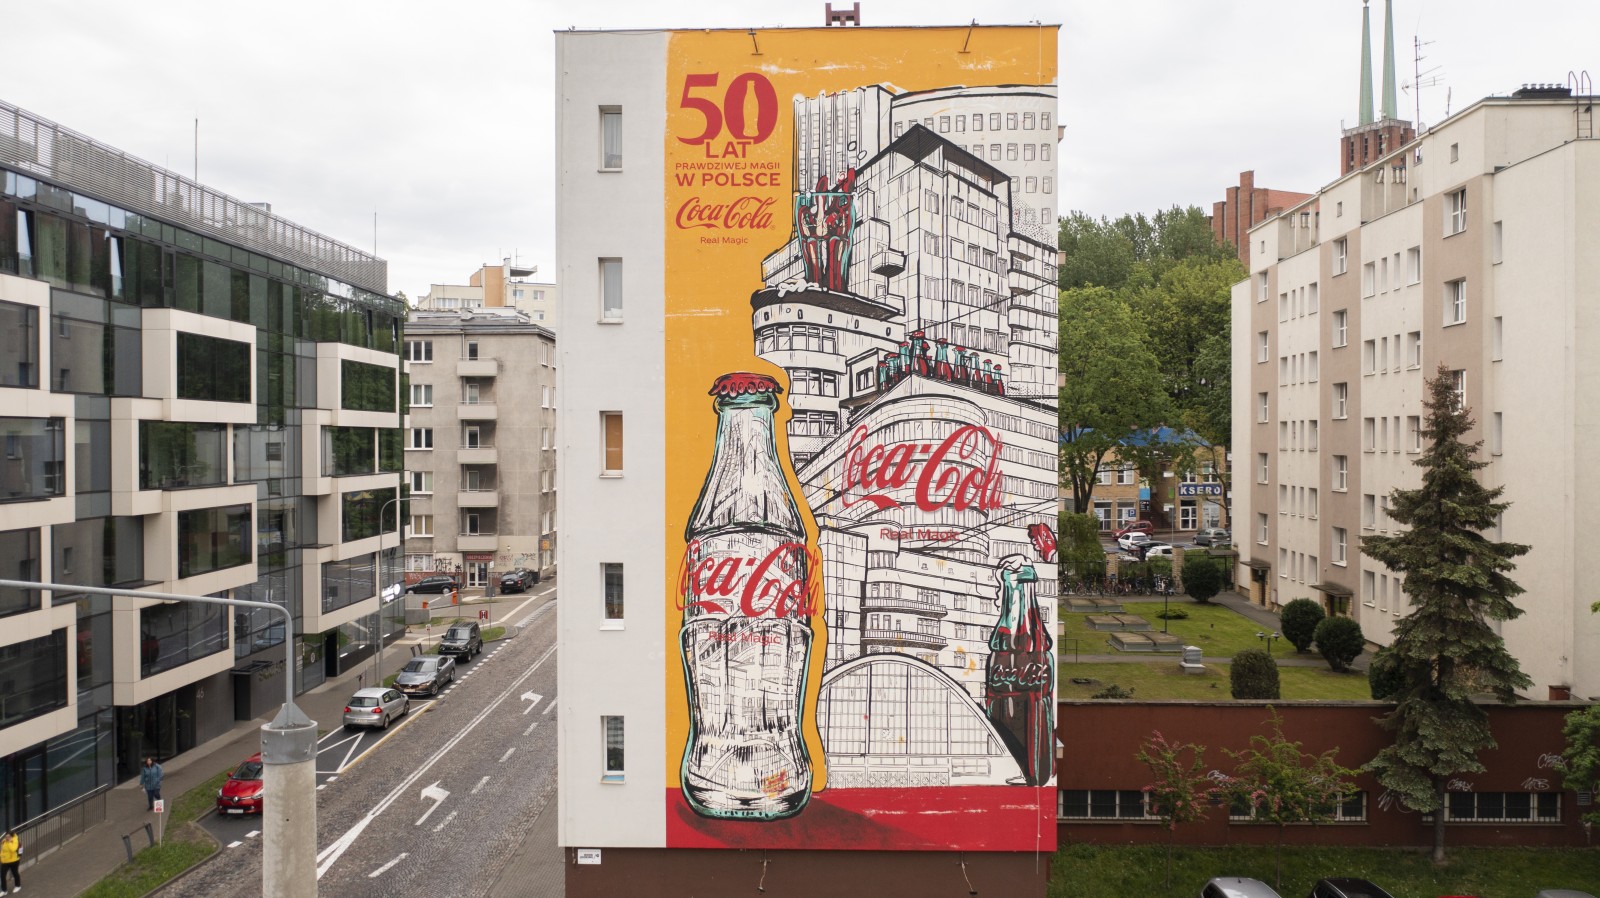 Mural Coca-Cola Retro w Gdyni | 50 lat prawdziwej magii w Polsce (retro) | Portfolio